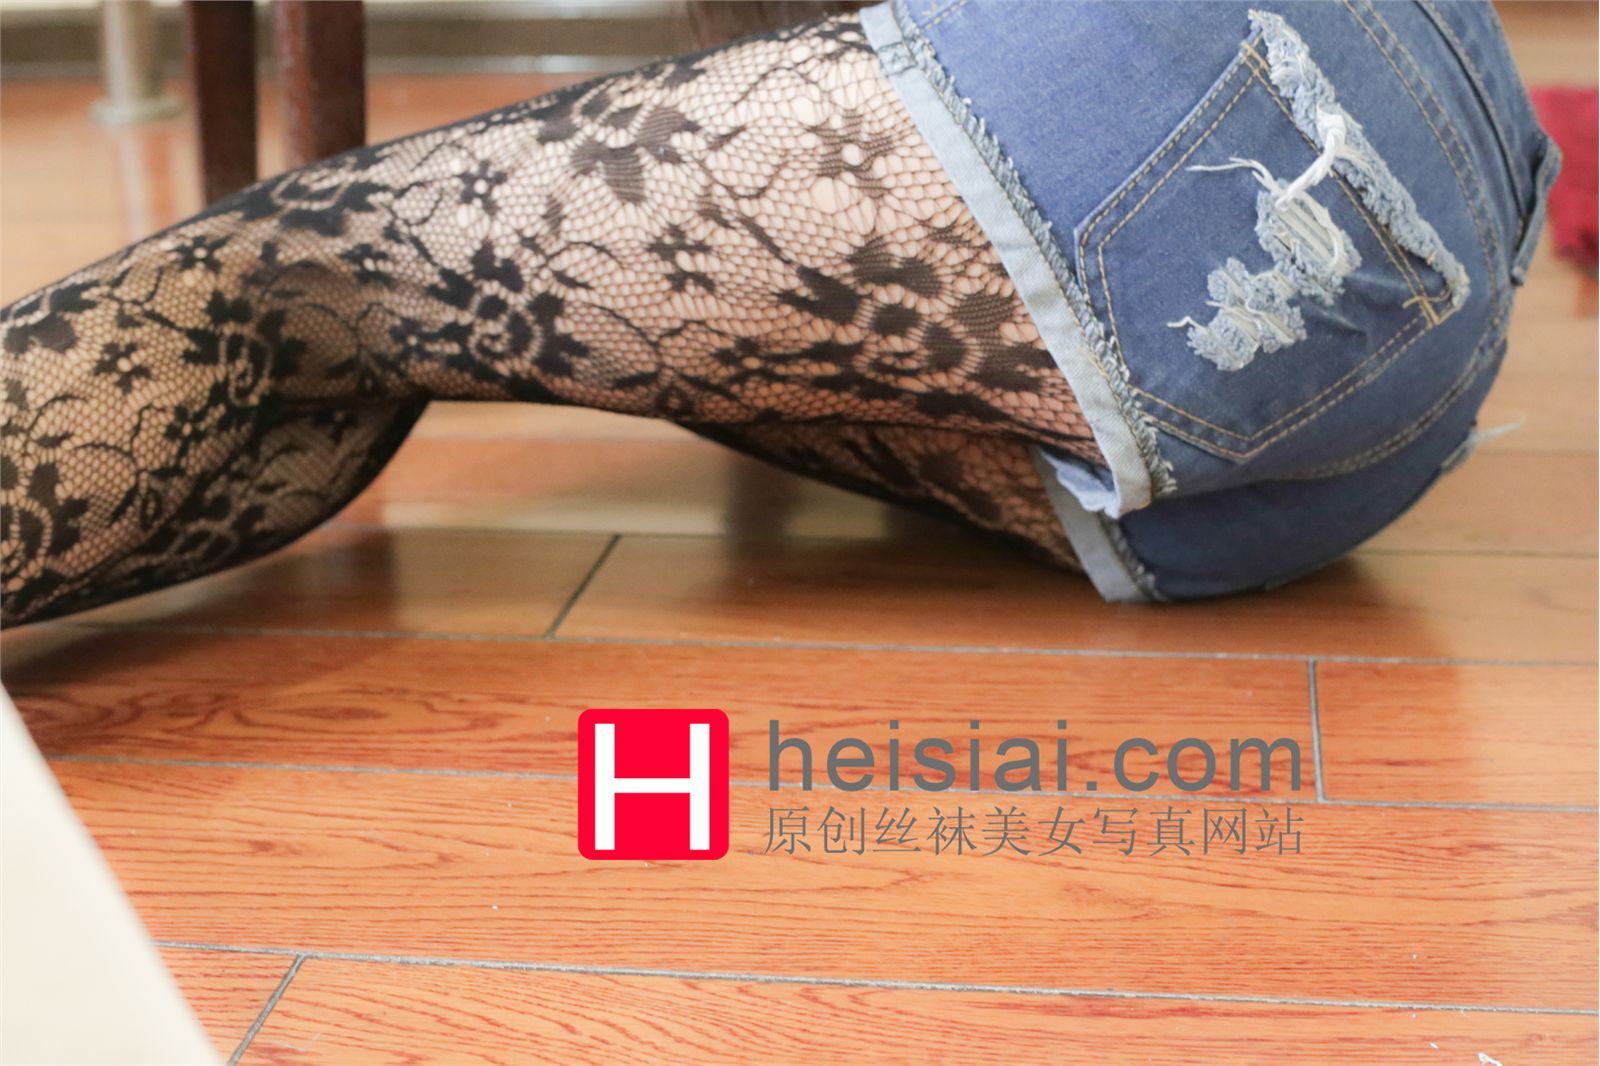 [heisiai] September 25, 2014. Silk stockings girl photo No.048